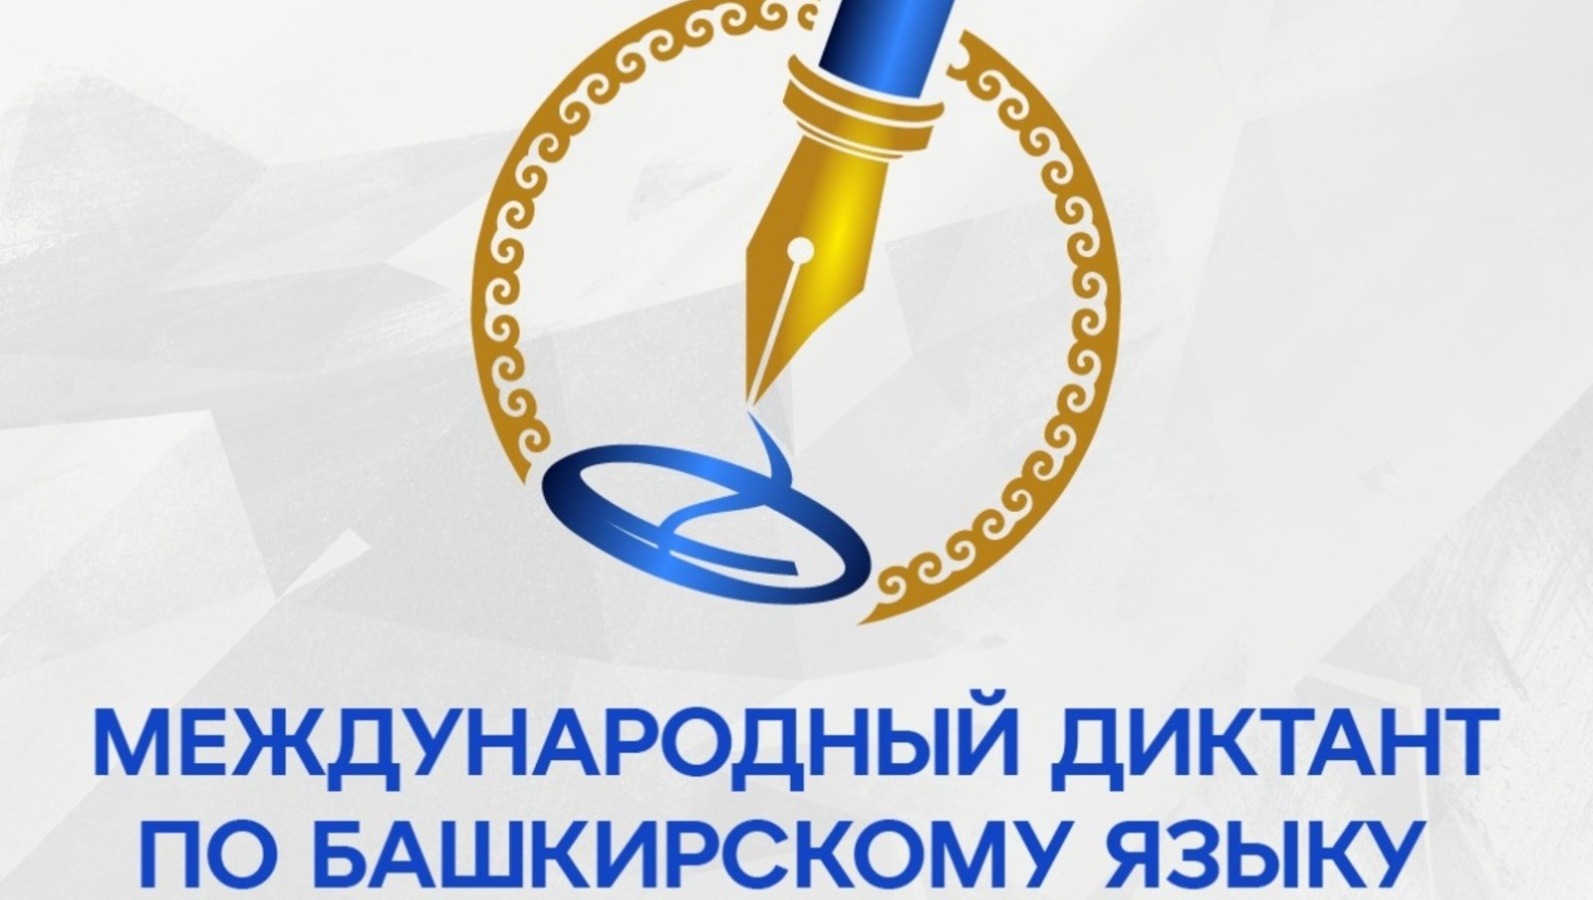 Более 408 тысяч человек во всем мире написали международный диктант по башкирскому языку